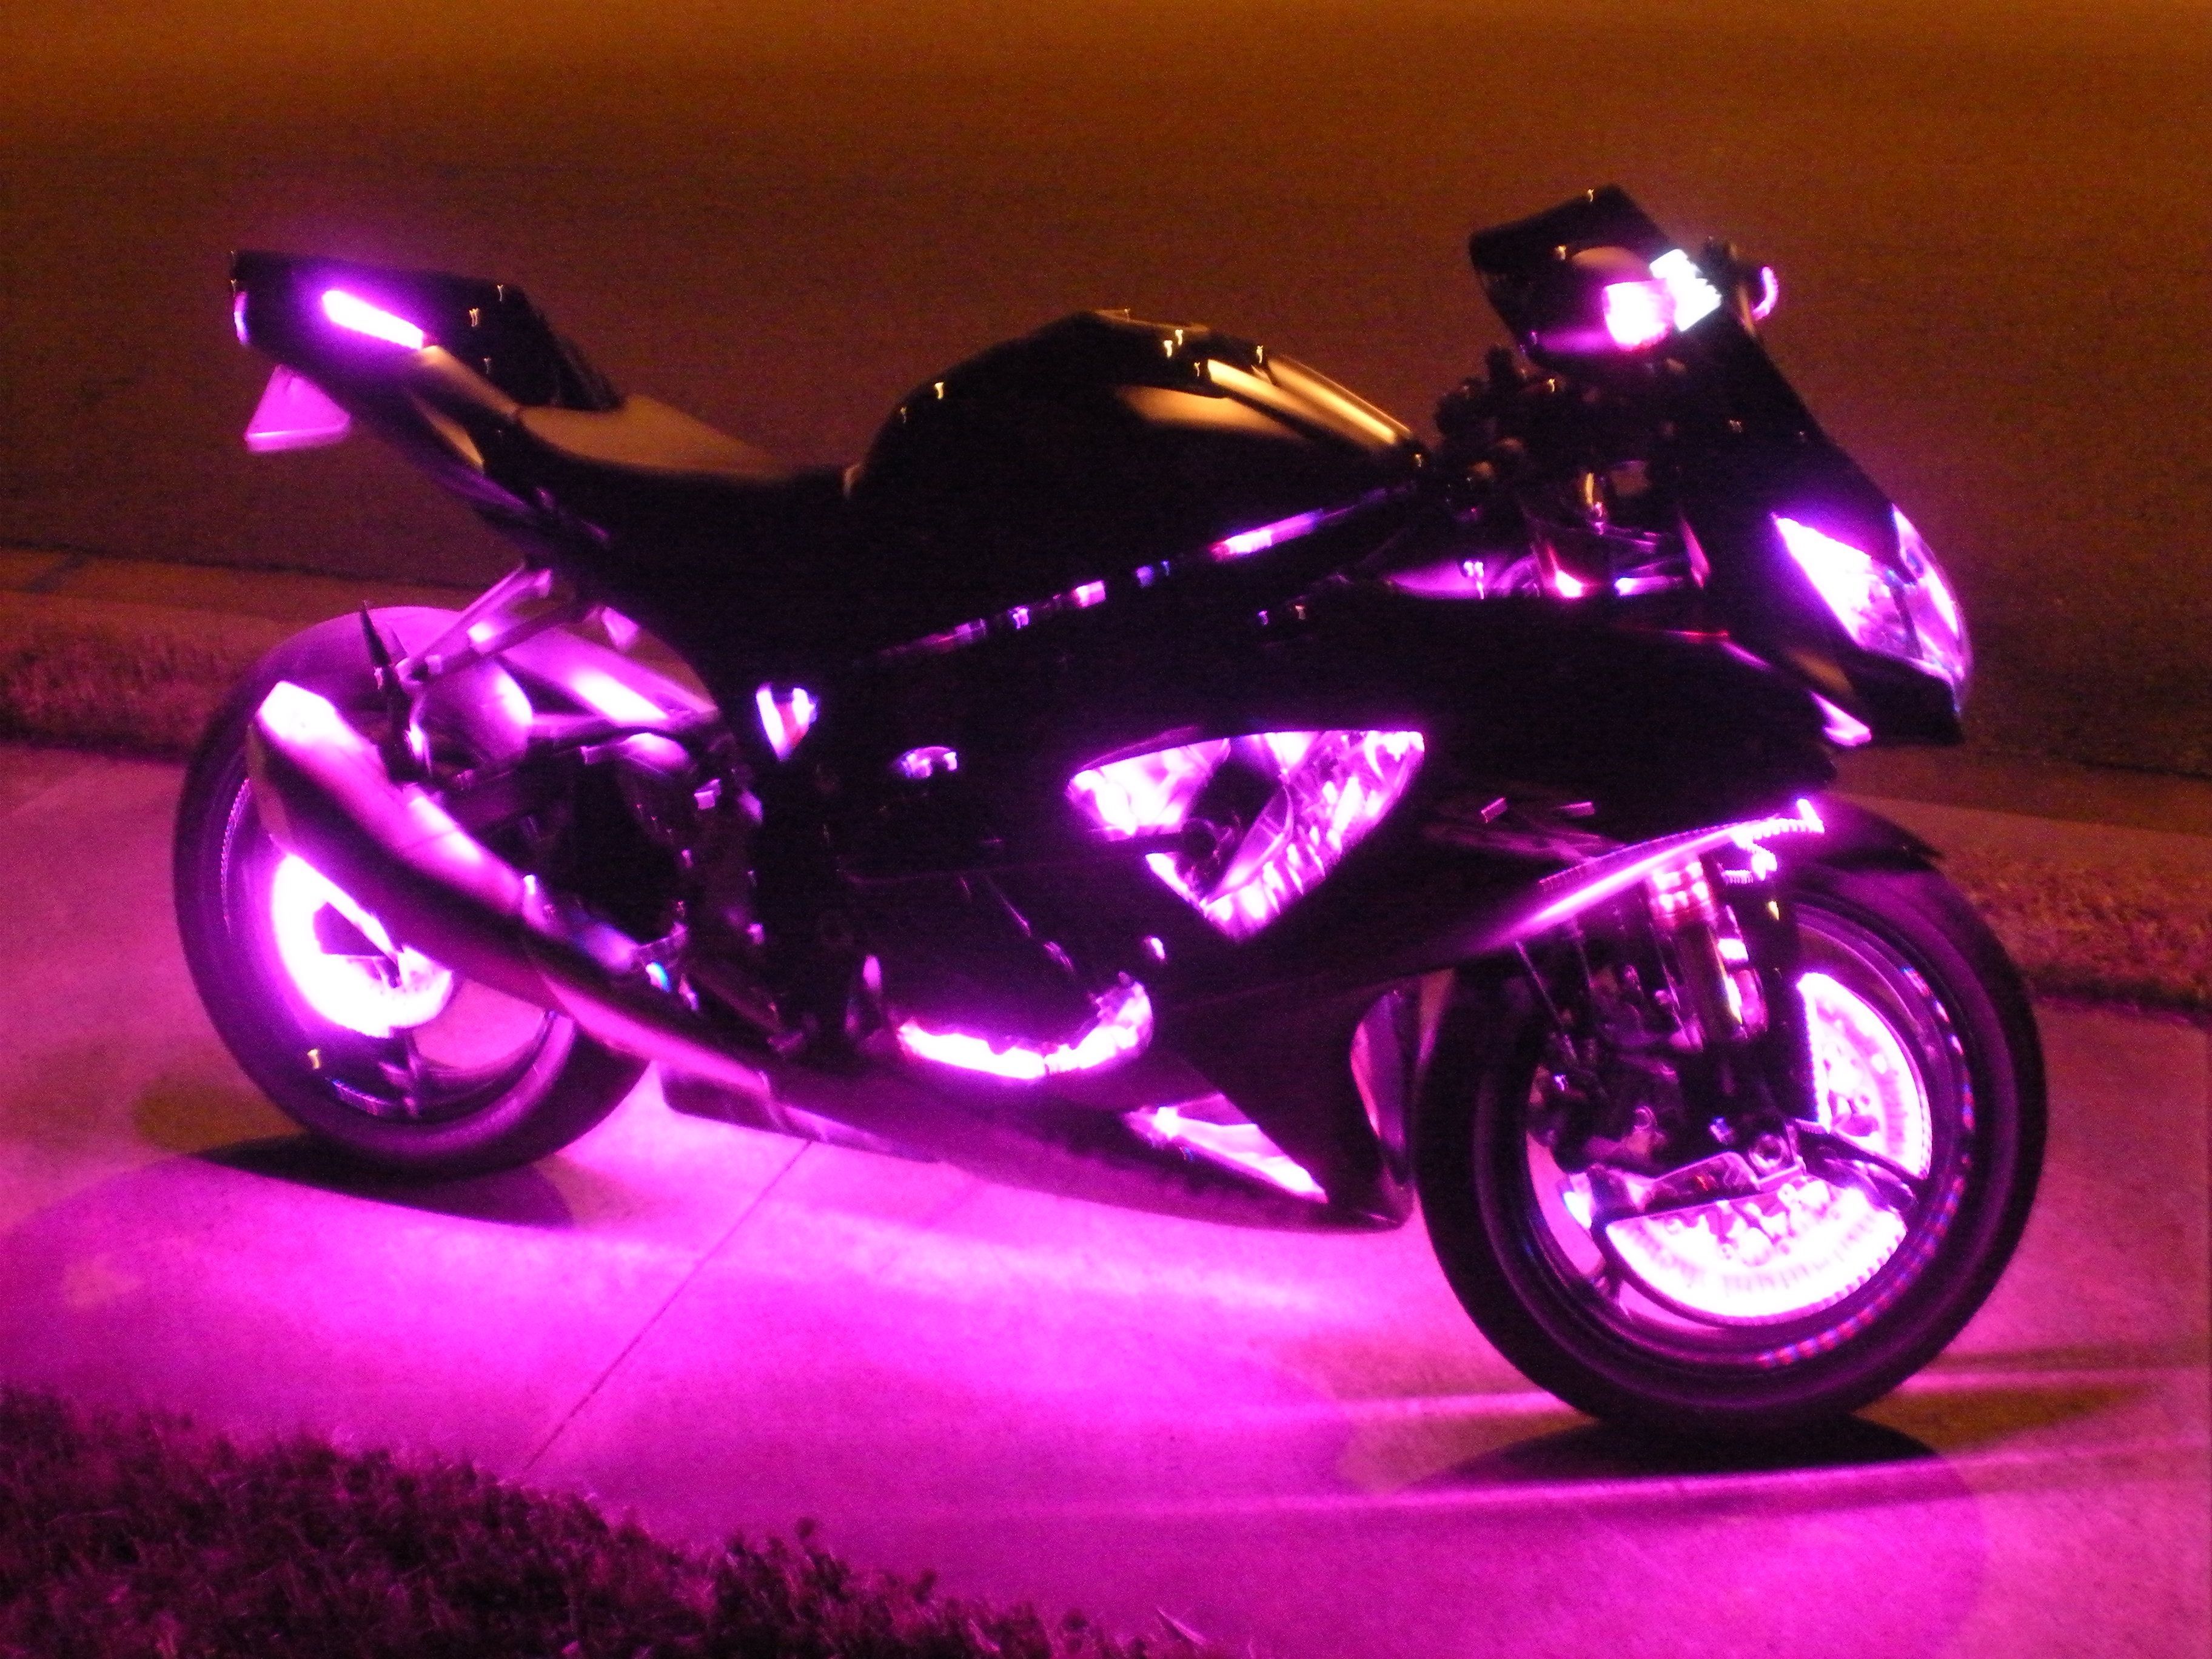 Bike with LED lights